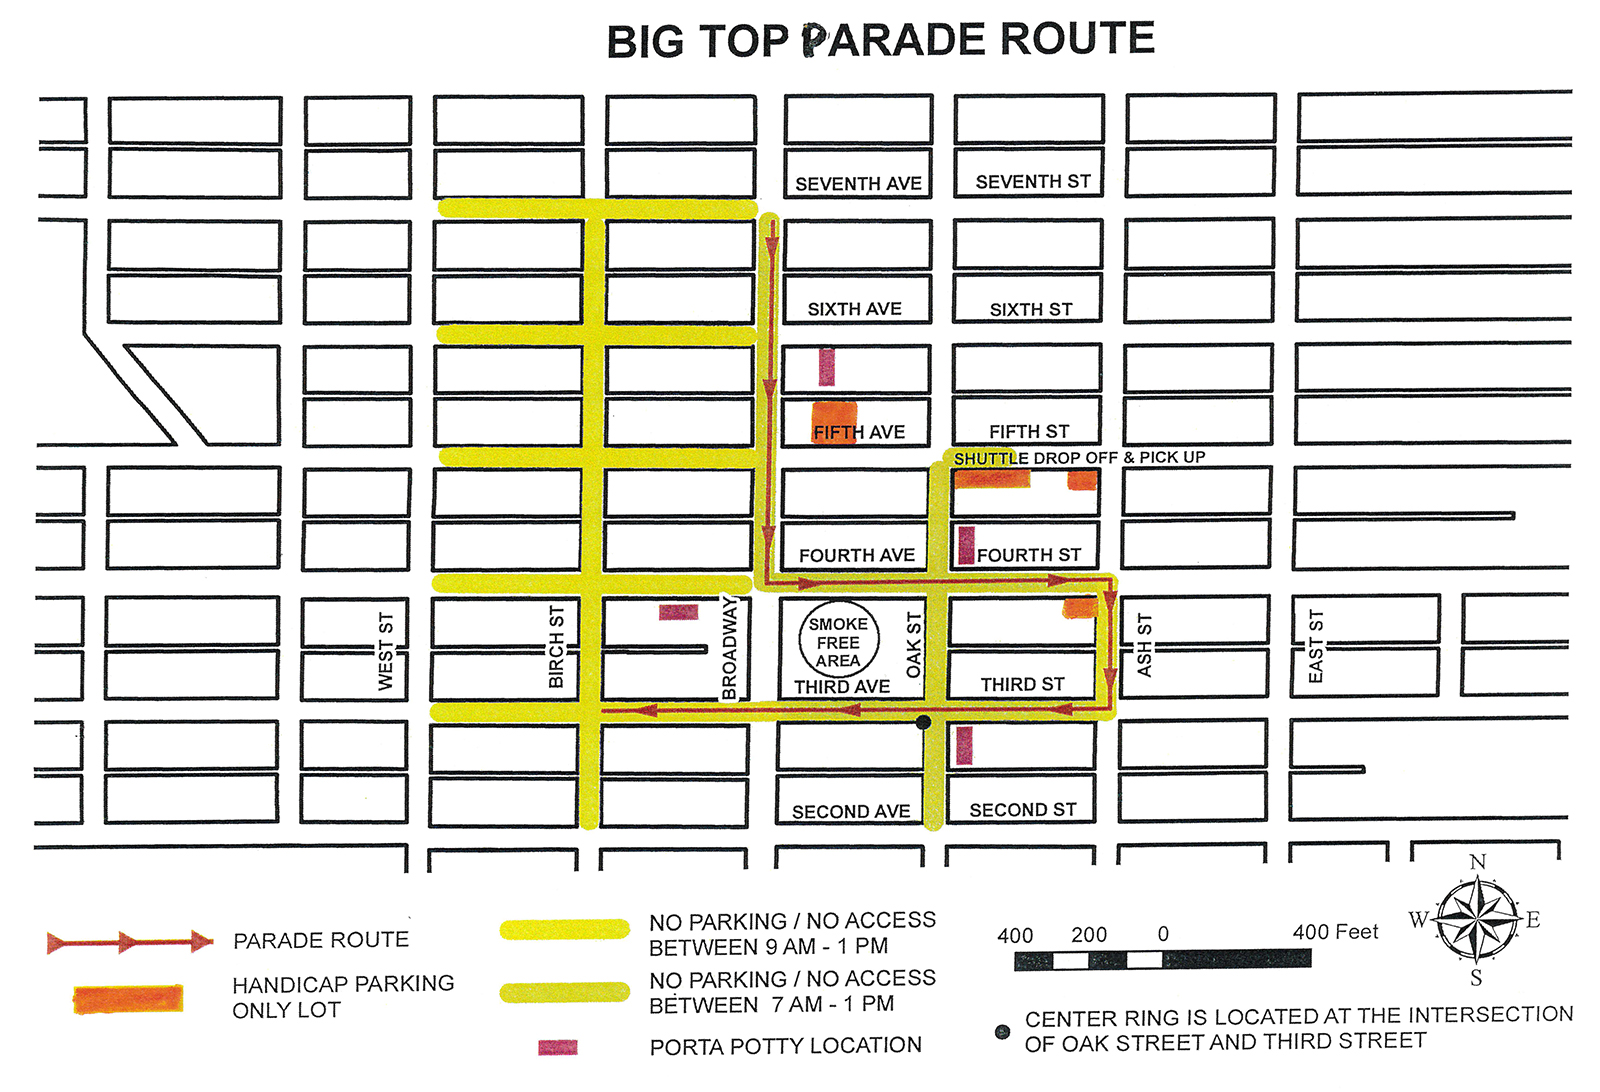 Big Top Parade: Know Before You Go